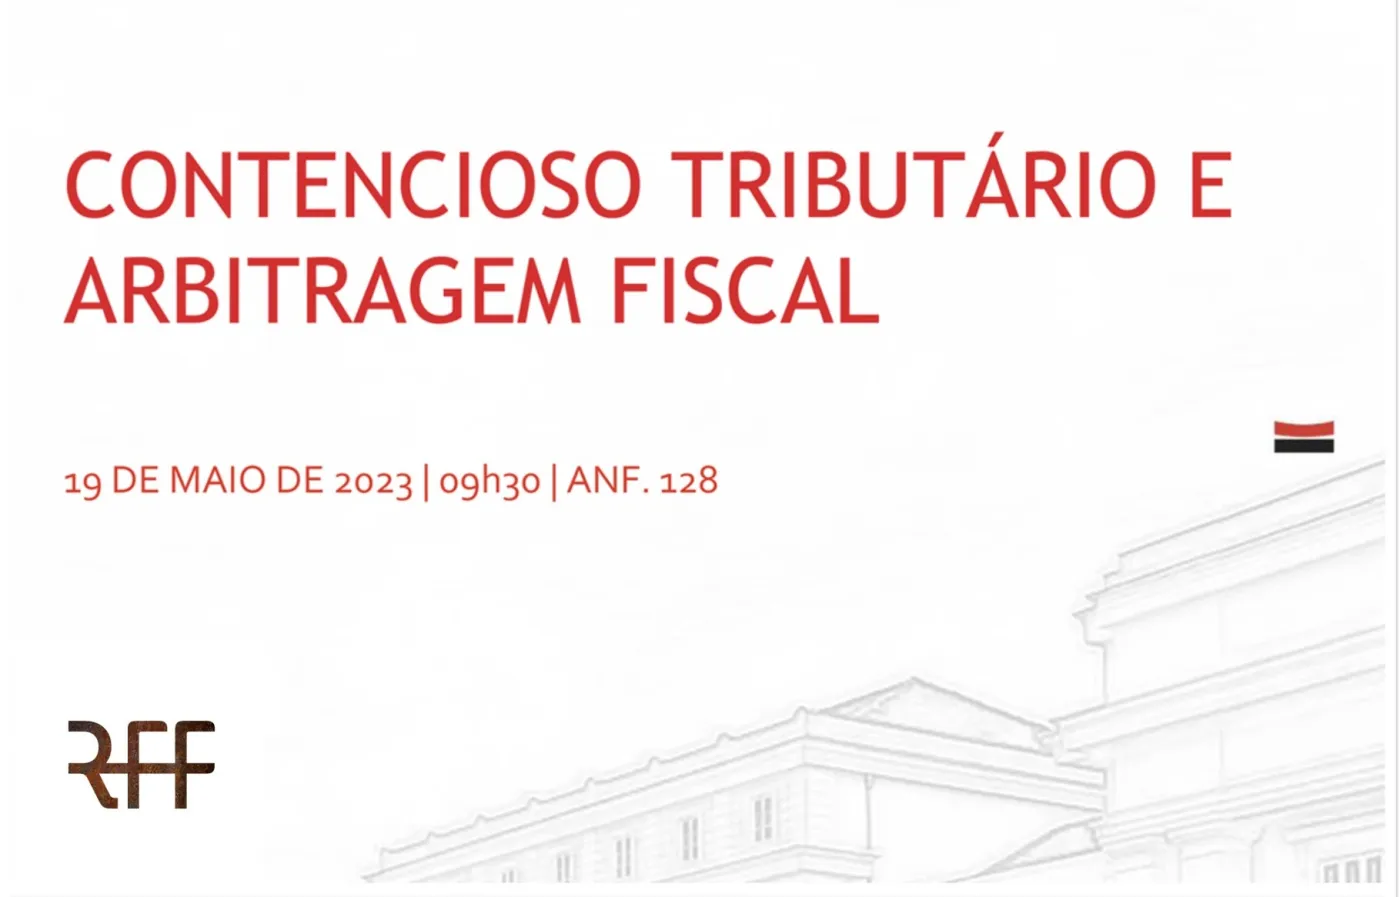 RFF advogados convidada para falar de arbitragem e contencioso fiscal na Faculdade de Direito da Universidade do Porto